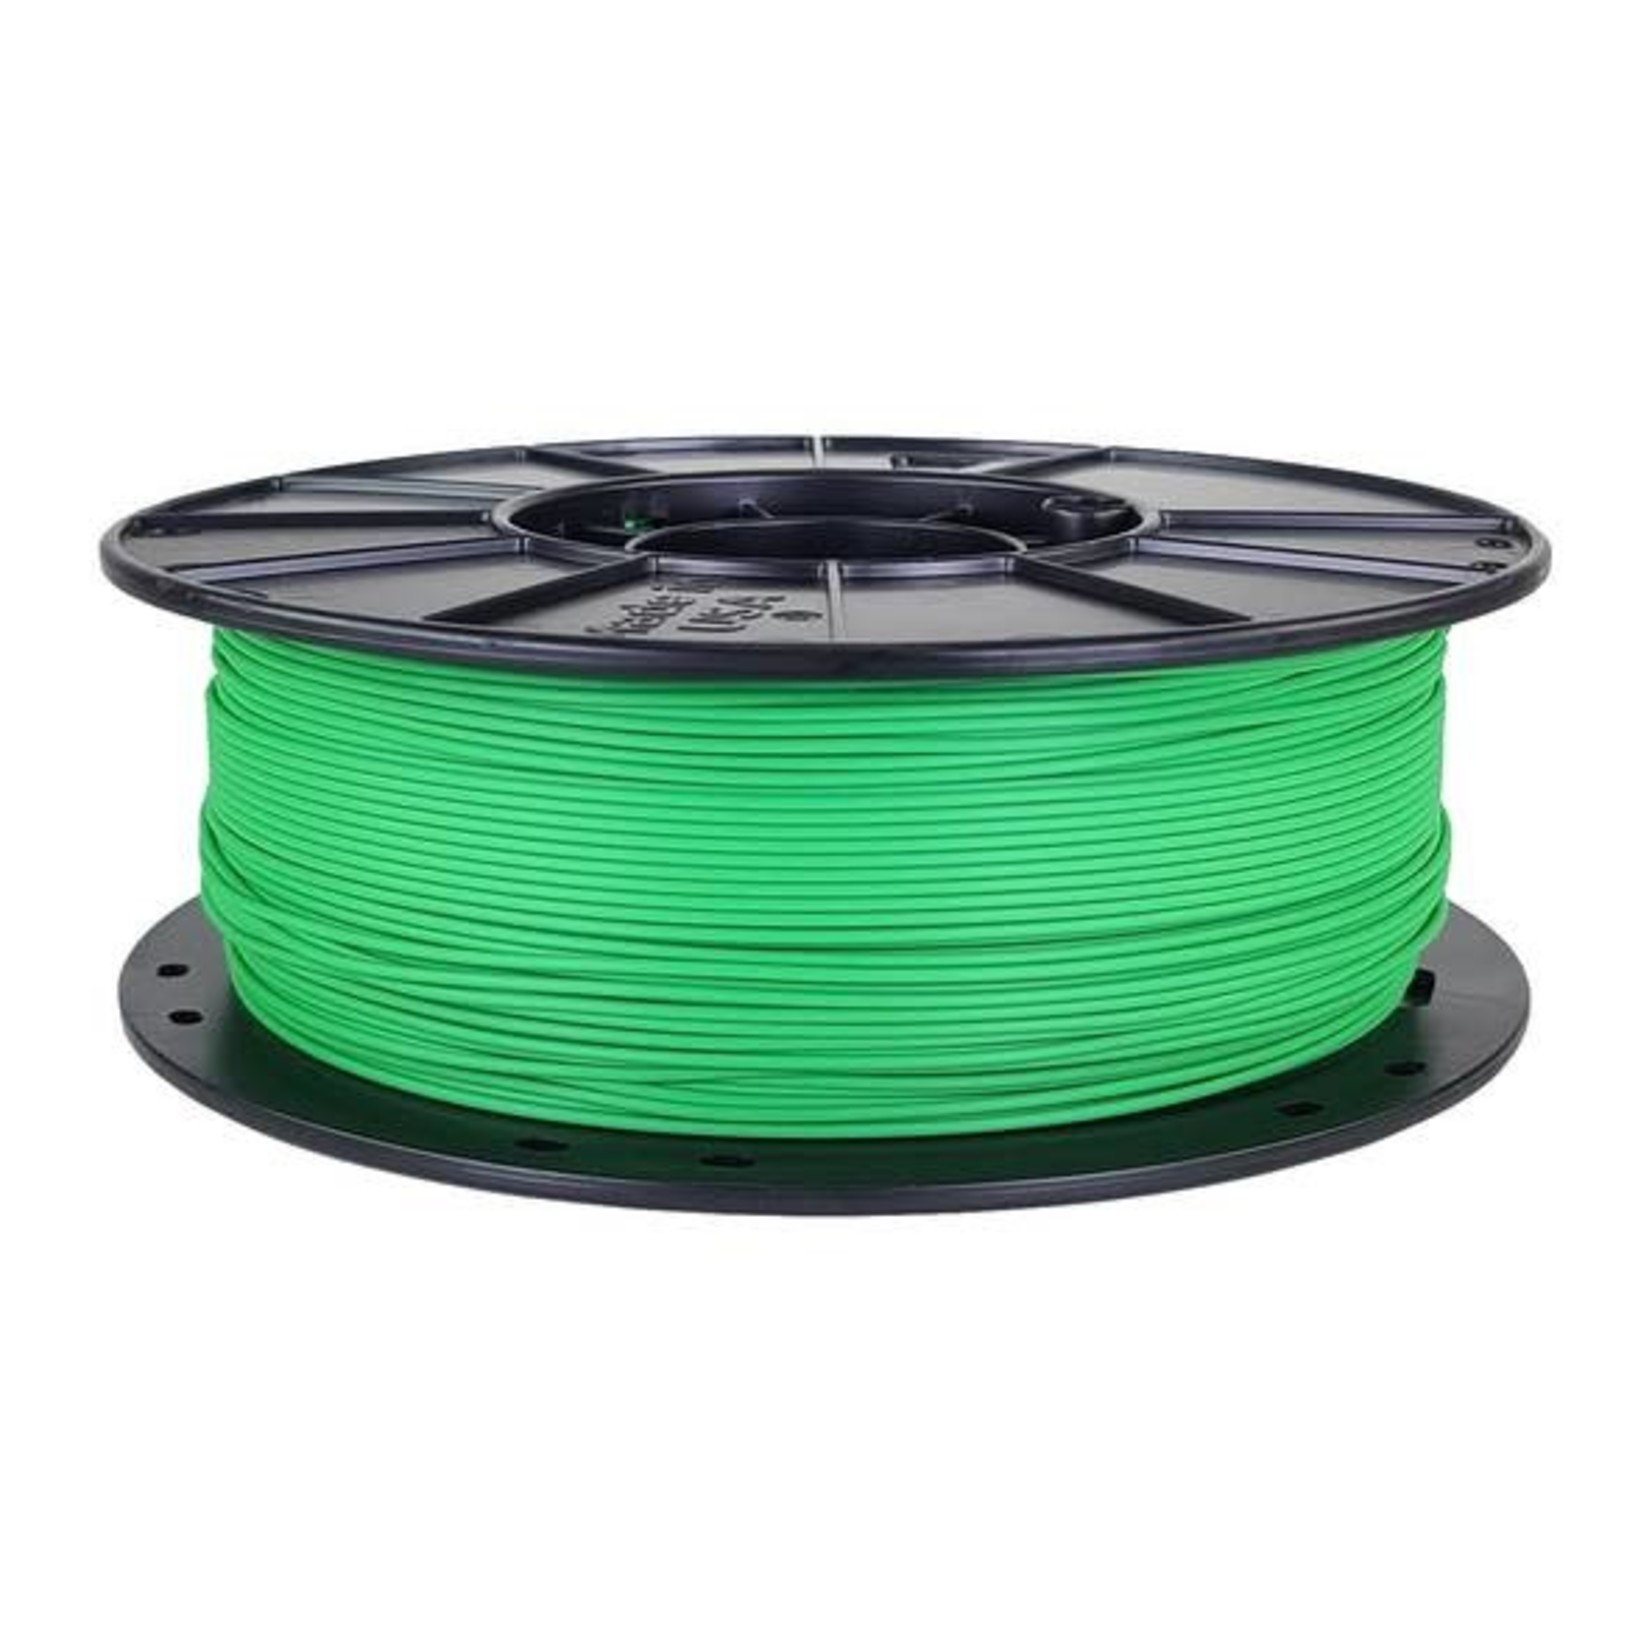 3D-Fuel 3D-Fuel 1.75mm Standard PLA Filament (Grass Green) #A1507